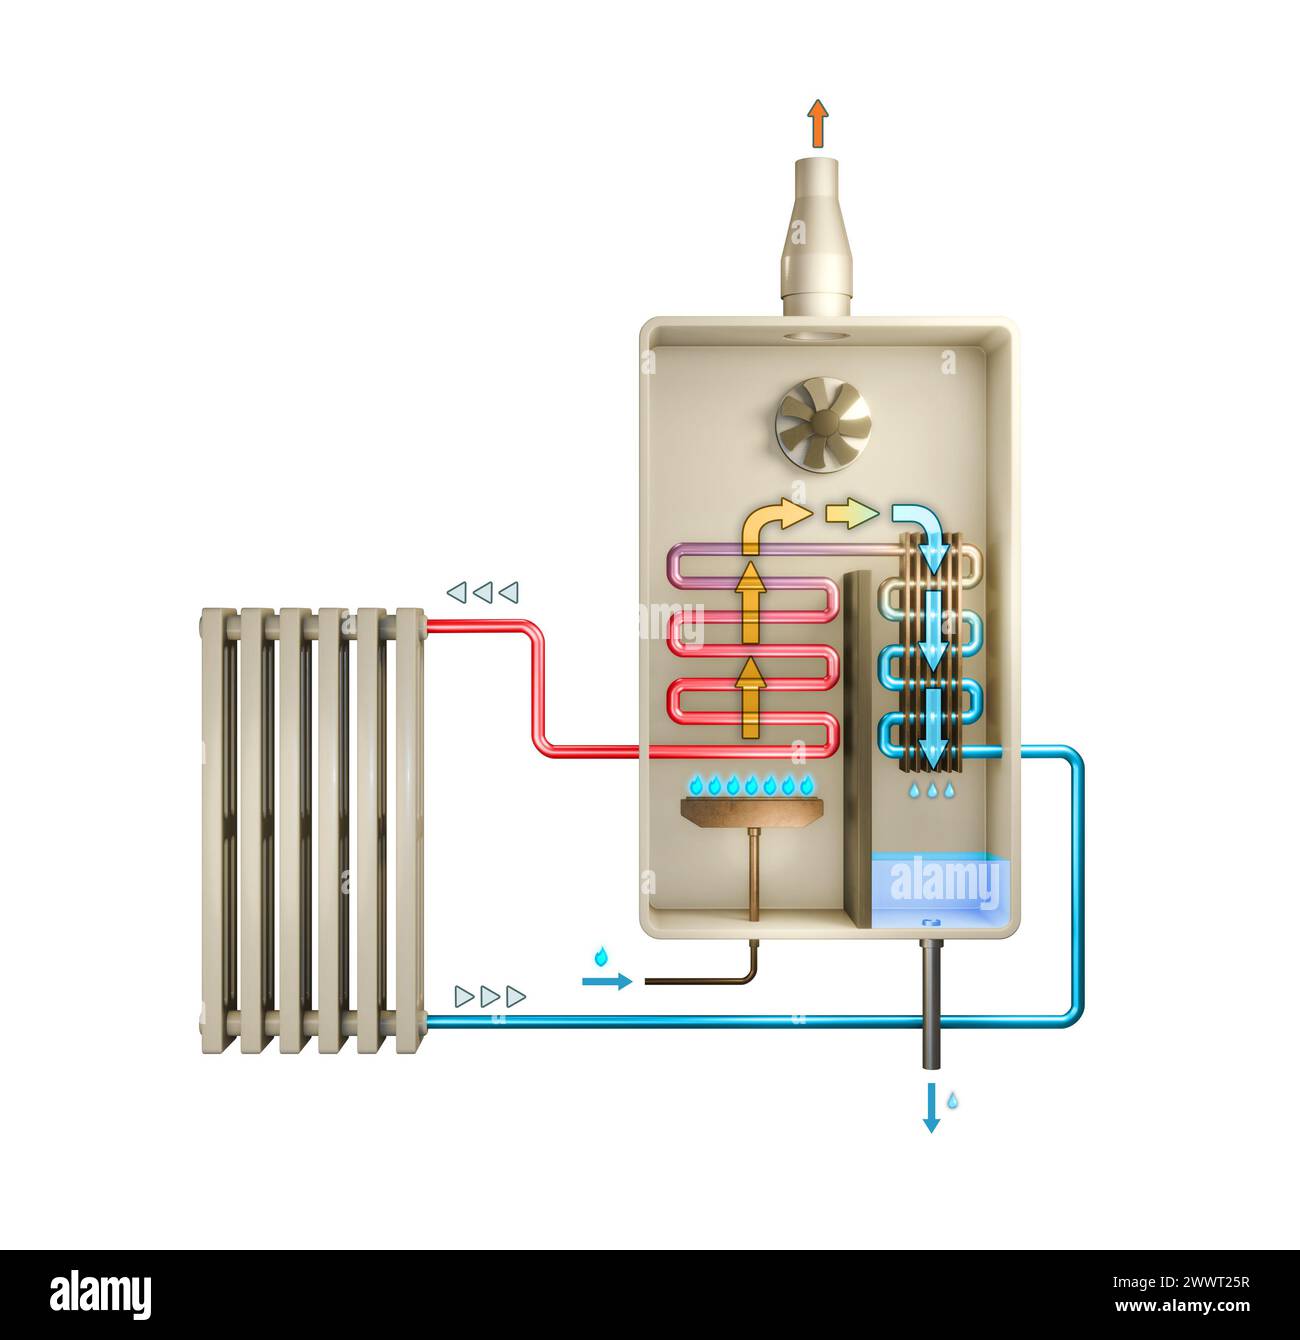 Schéma simplifié montrant le fonctionnement d'une chaudière à gaz à condensation. Illustration numérique, rendu 3D. Banque D'Images